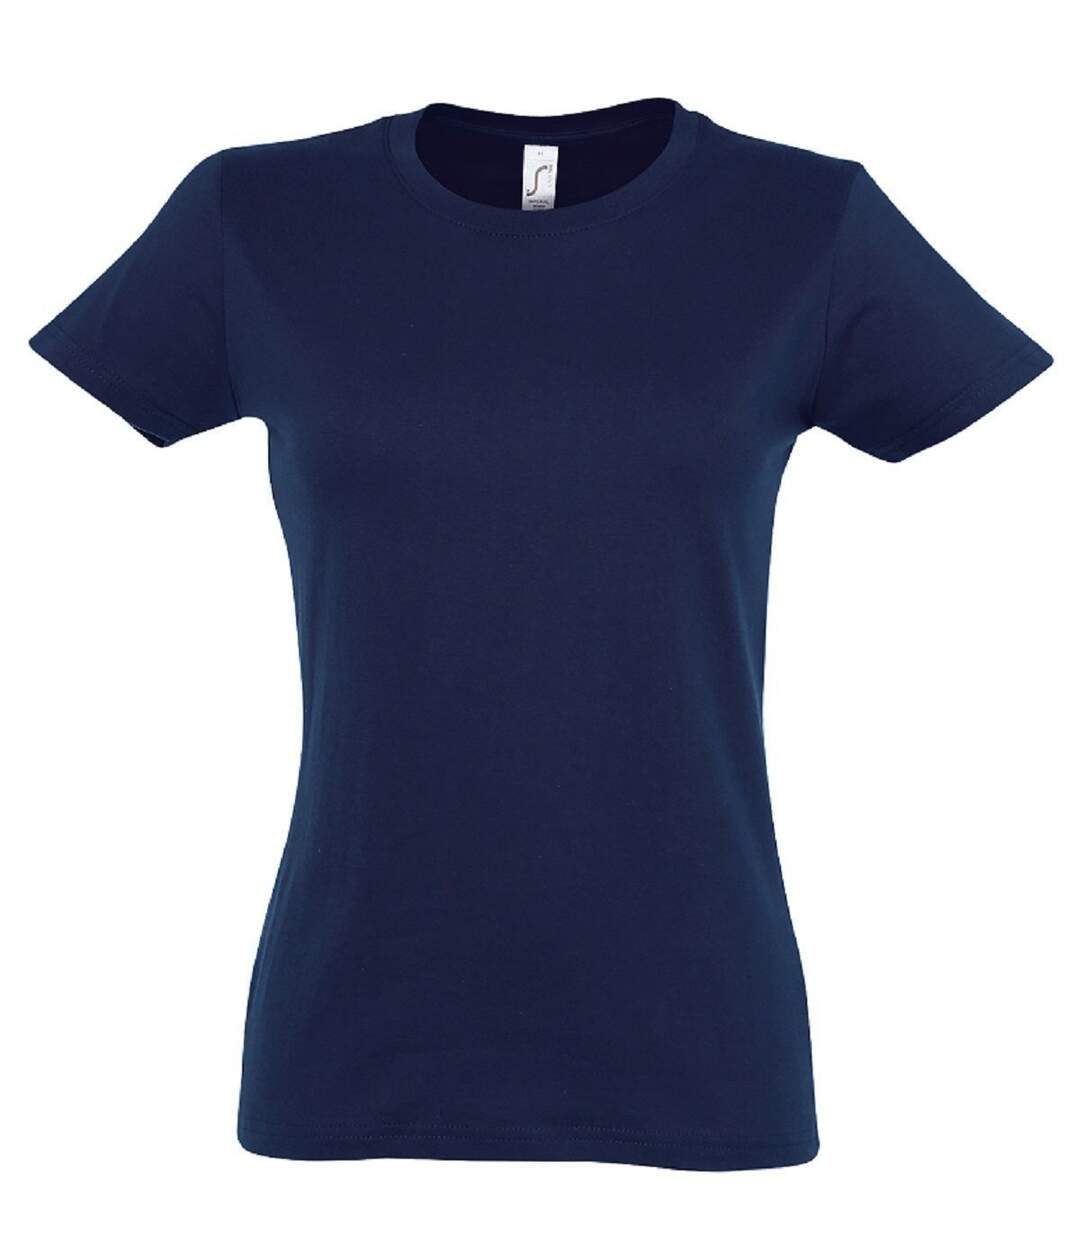 T-shirt manches courtes - Femme - 11502 - bleu marine clair